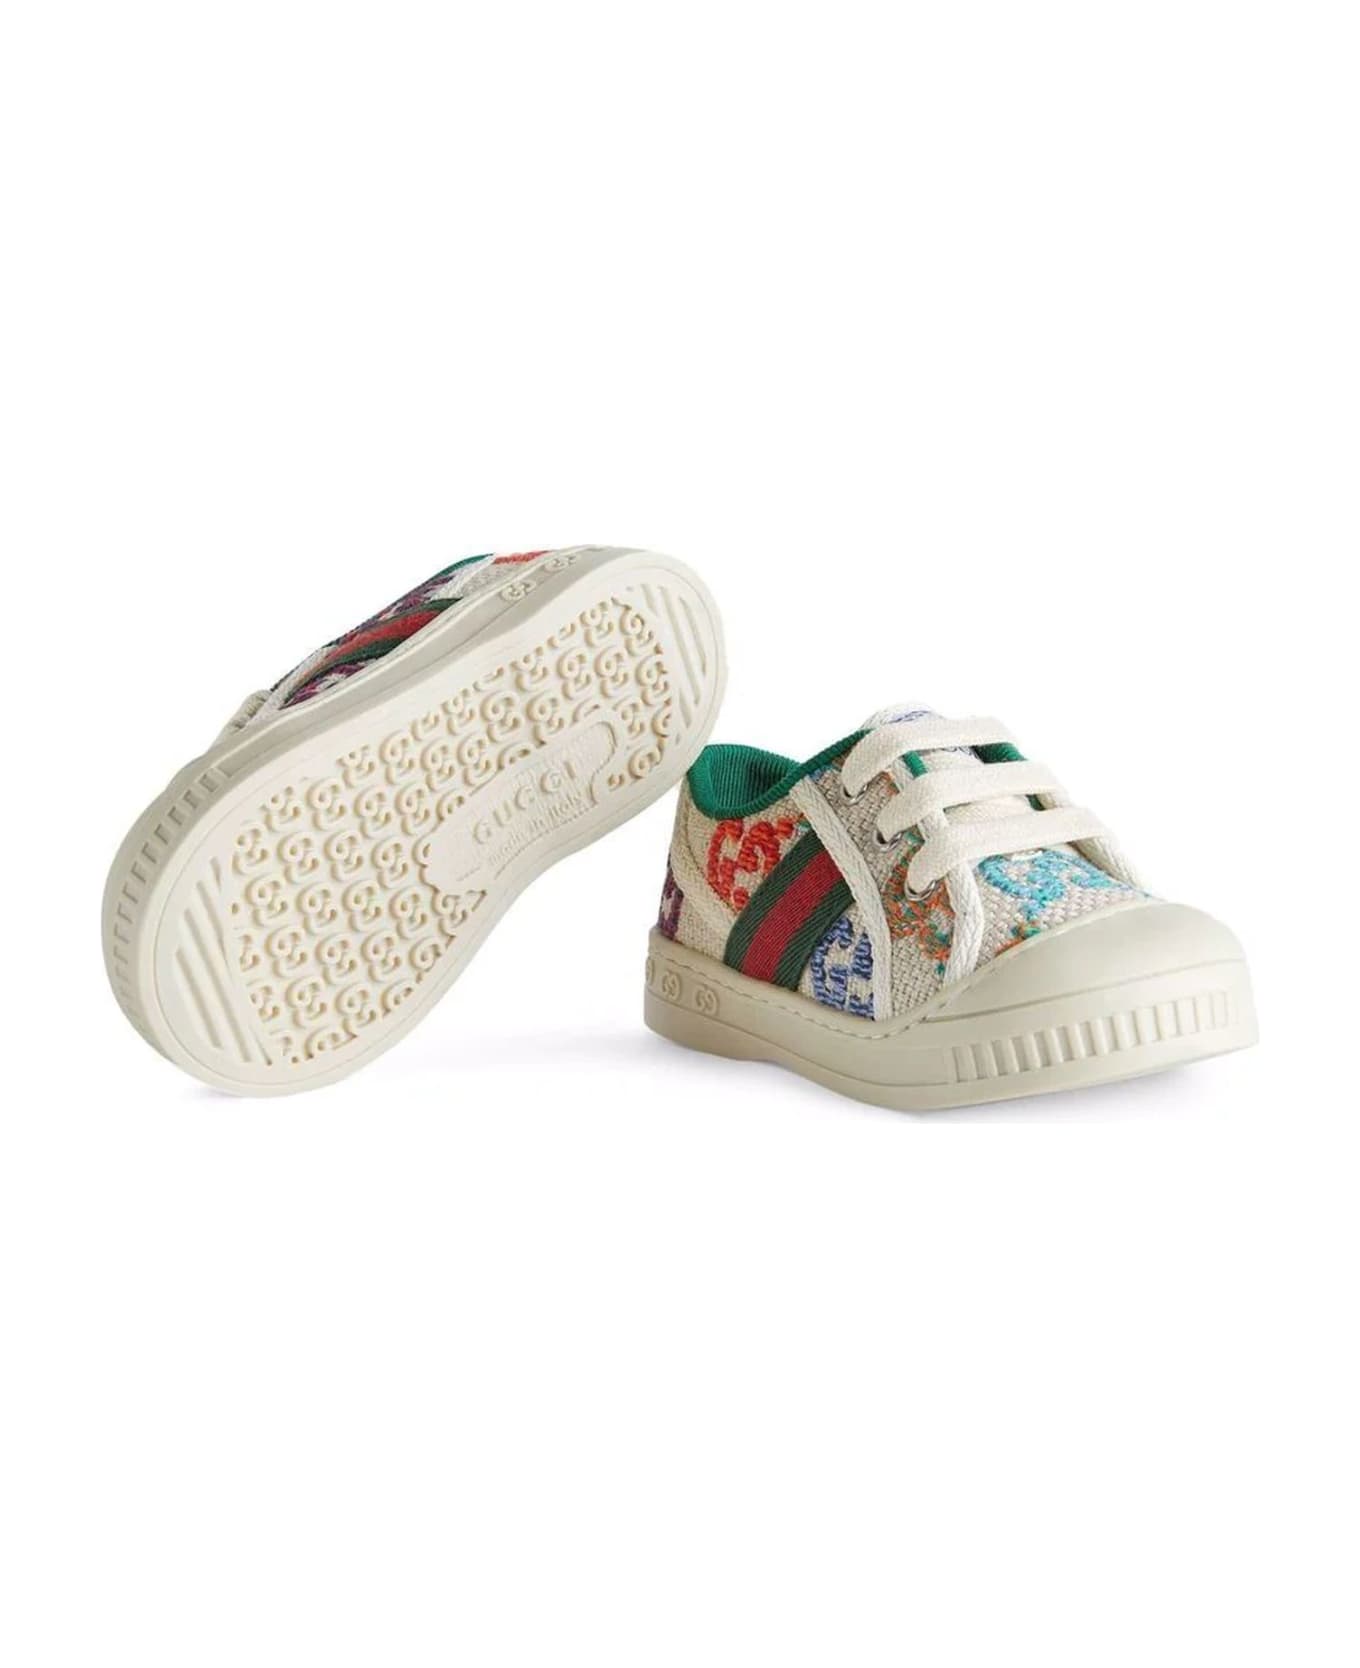 Gucci White Rubber Sneakers - Multicolor